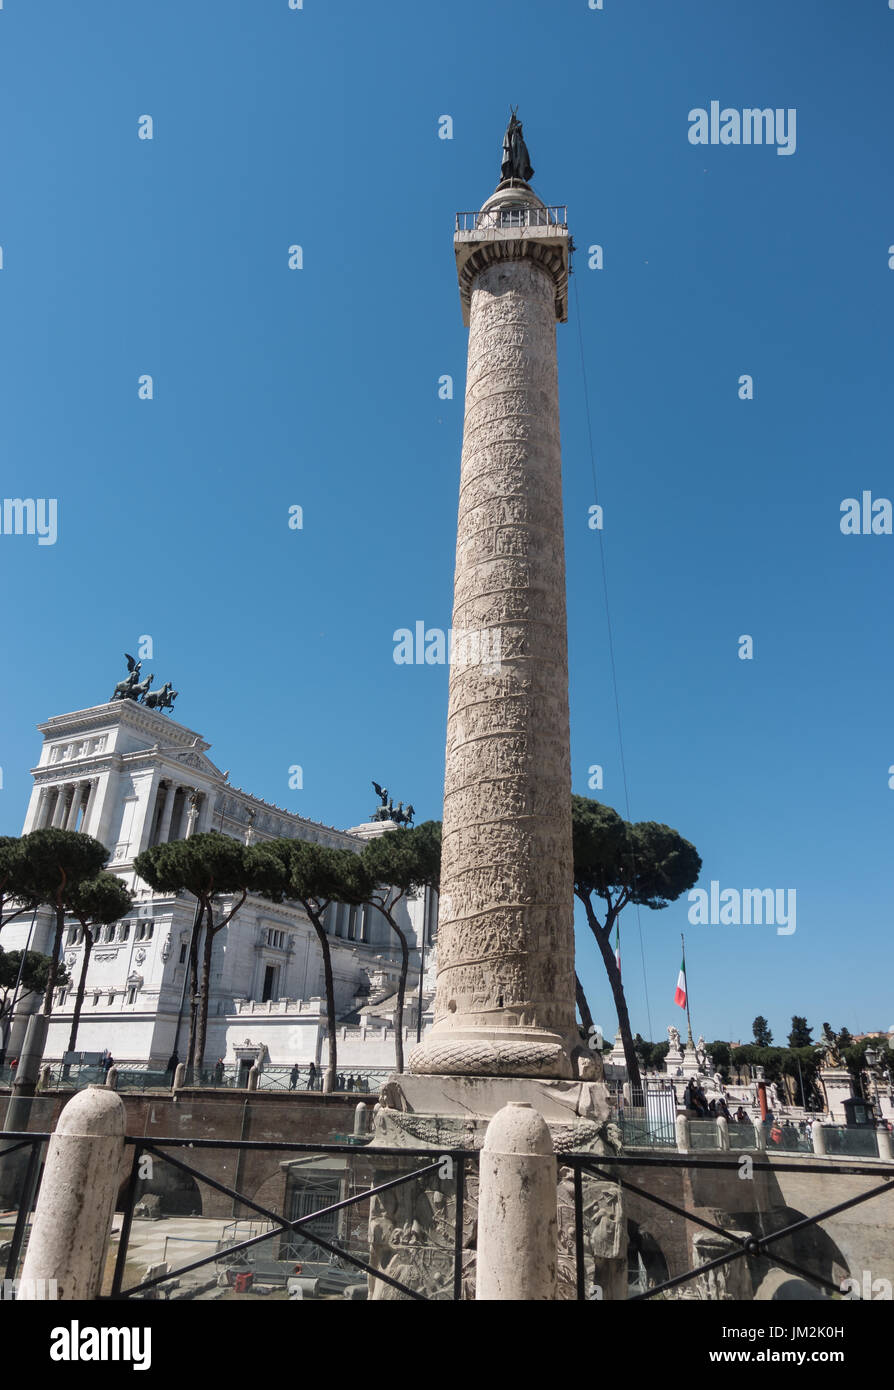 Antica Colonna di Traiano con spirale bassorilievo; Victor Emmanuel II in background. San Pietro statua in bronzo sulla sommità, posta dal papa Sisto 5 nel 1587. Foto Stock